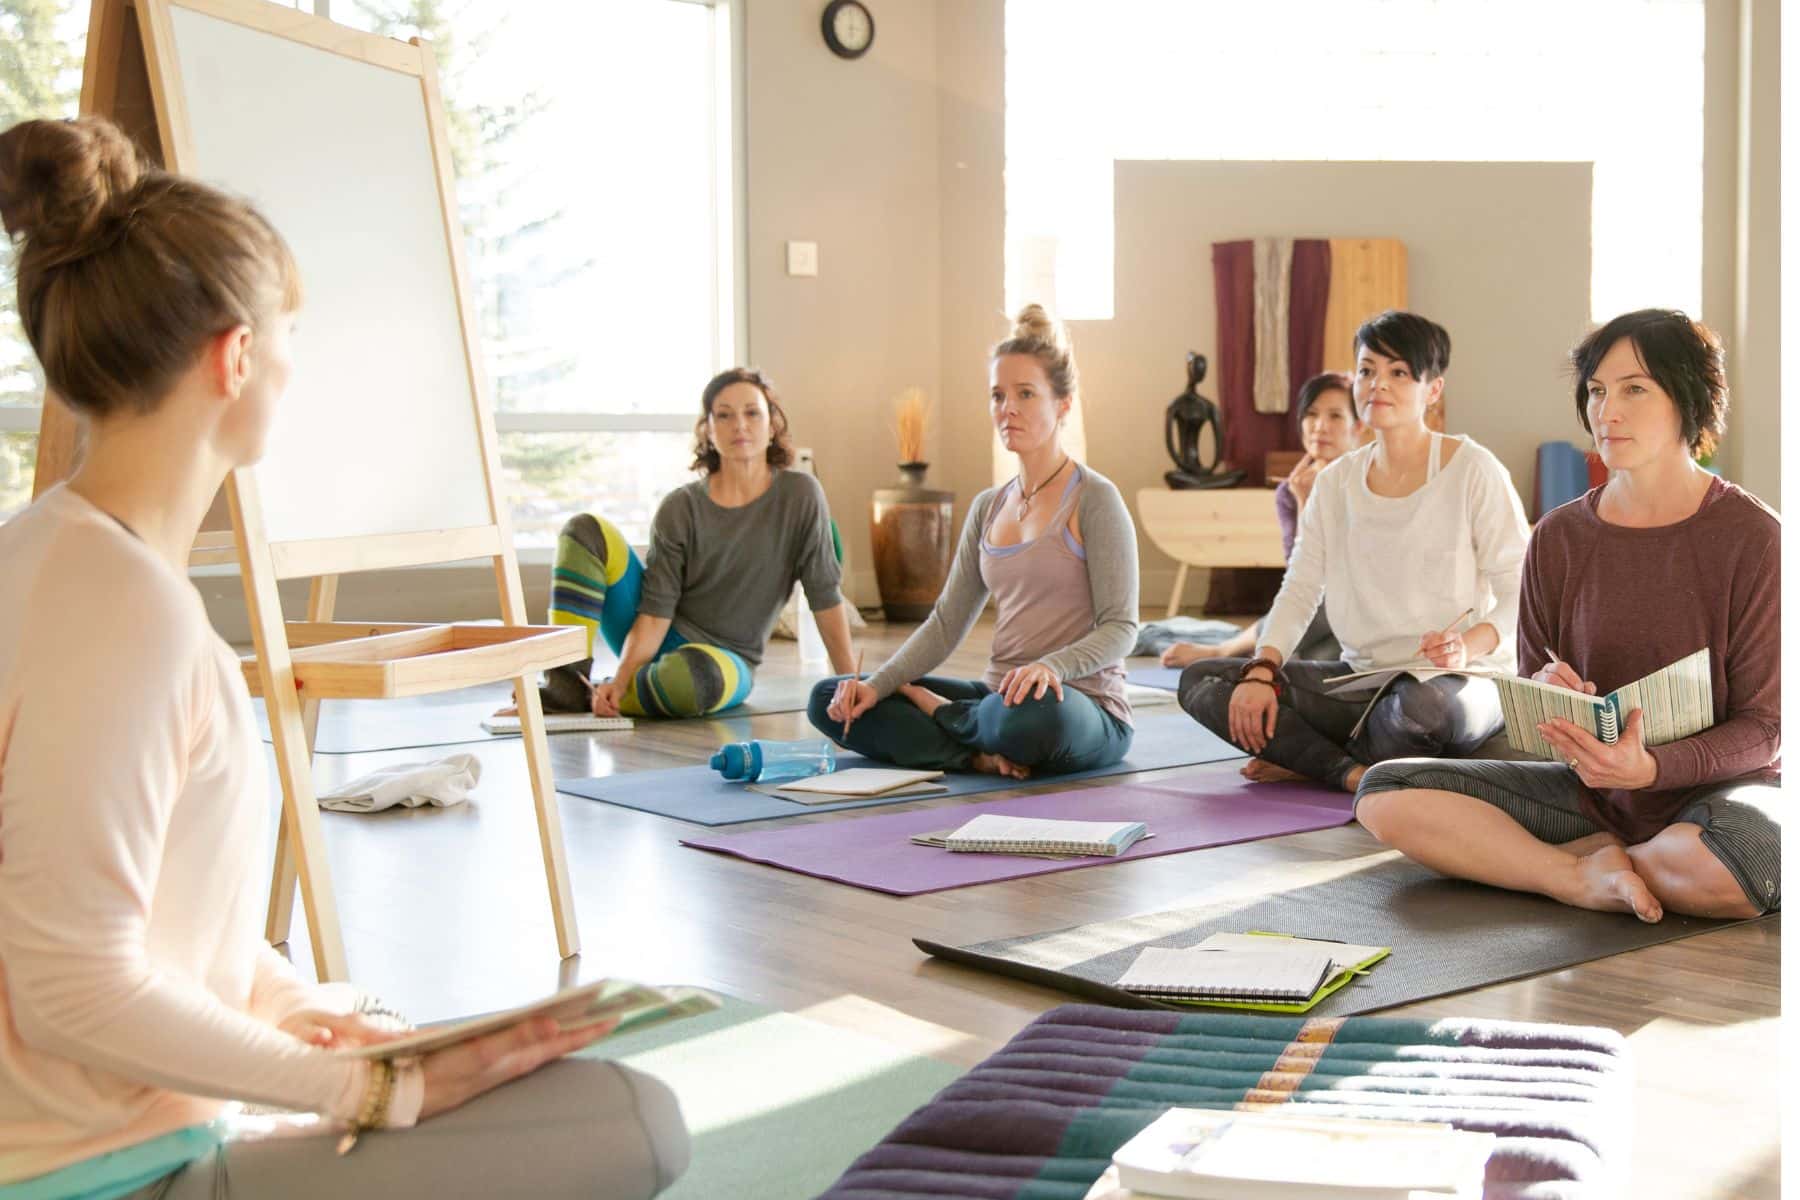 Frauengruppe auf Yogamatten in einer Ausbildungslektion